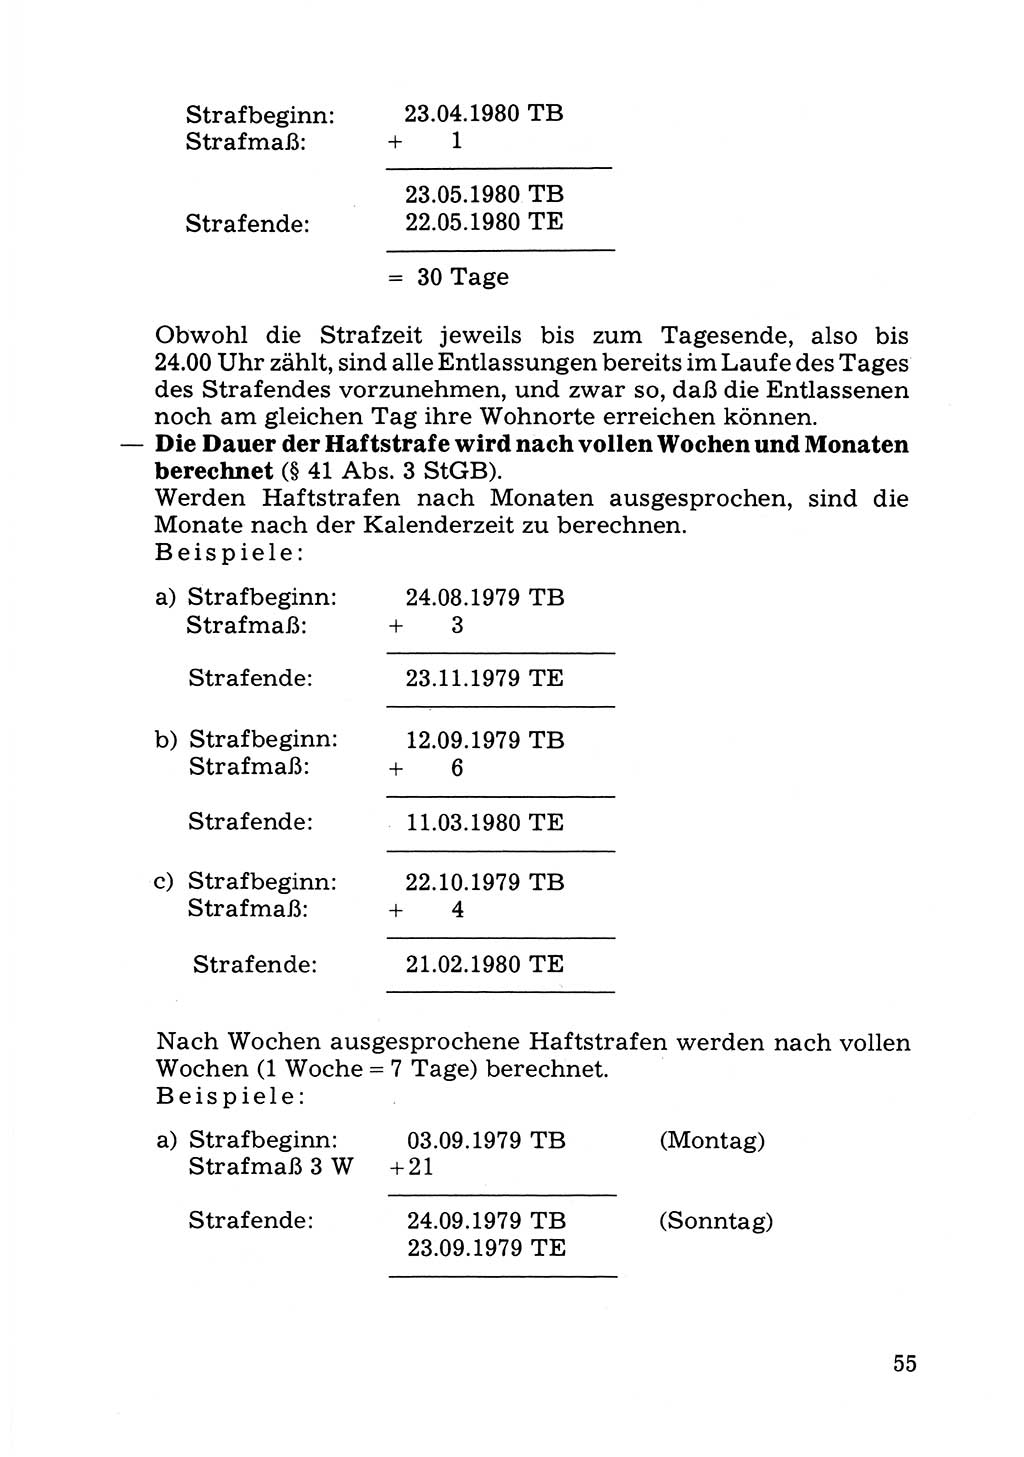 Verwaltungsmäßige Aufgaben beim Vollzug der Untersuchungshaft (U-Haft) sowie der Strafen mit Freiheitsentzug (SV) [Deutsche Demokratische Republik (DDR)] 1980, Seite 55 (Aufg. Vollz. U-Haft SV DDR 1980, S. 55)